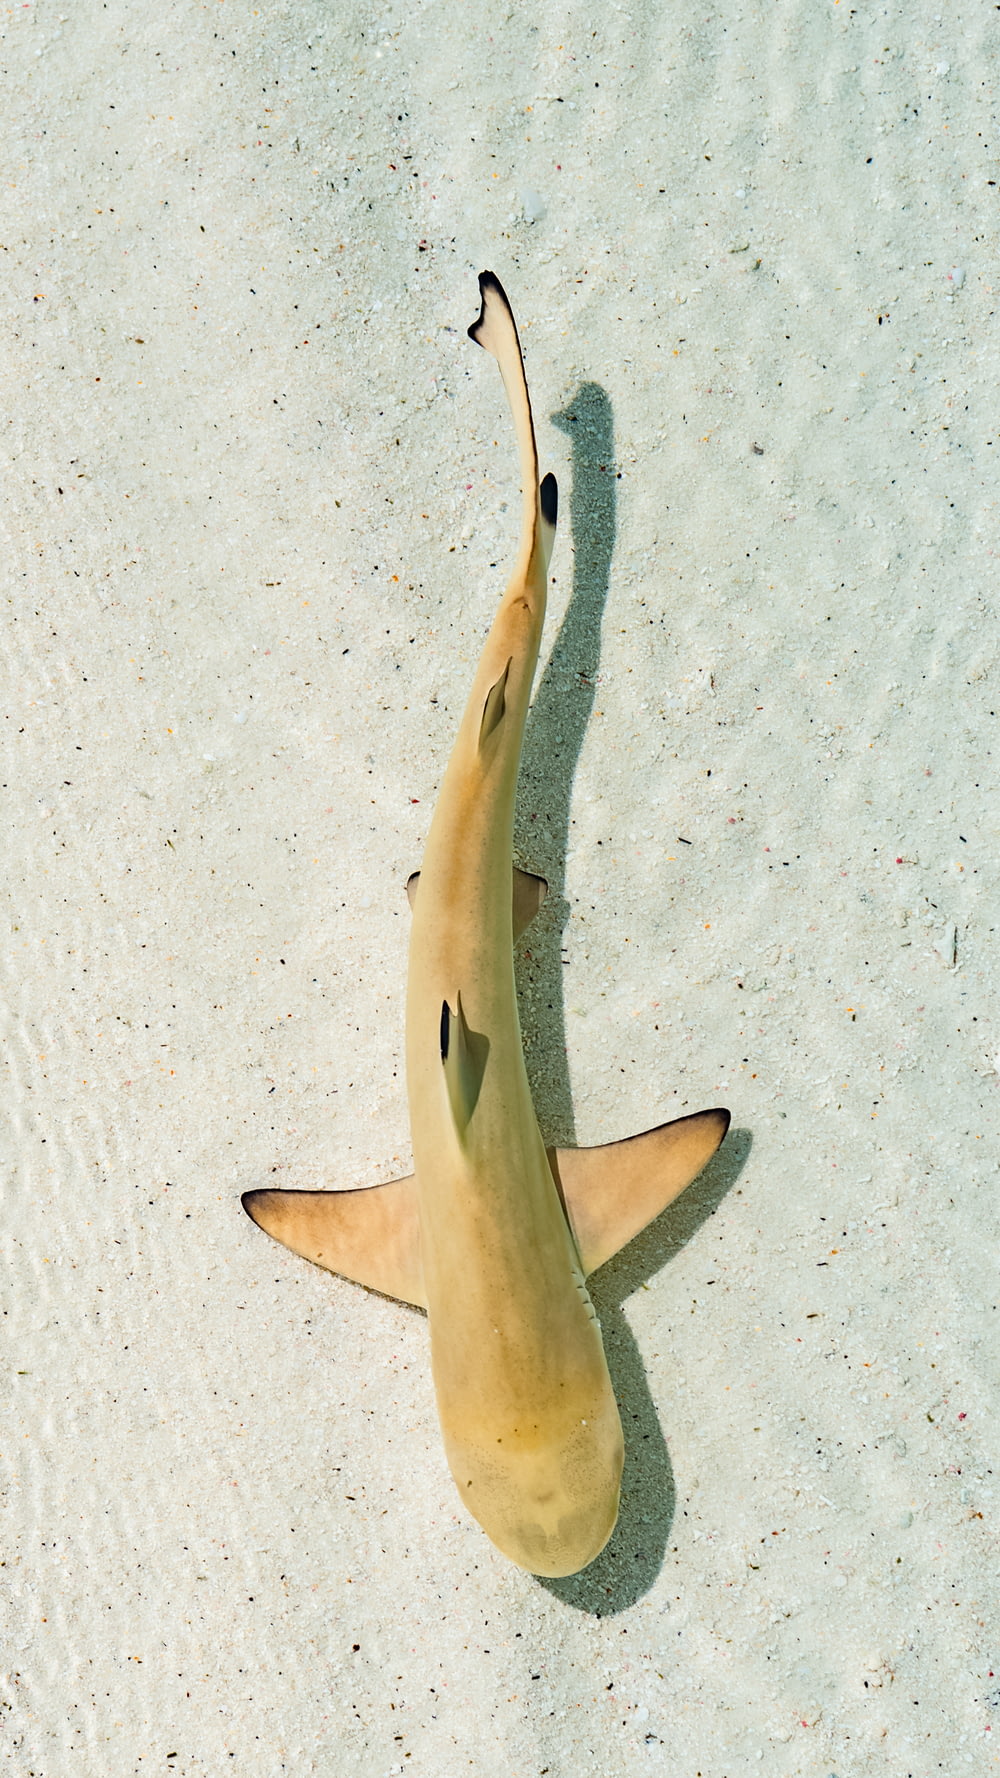 coda di squalo bianca e nera